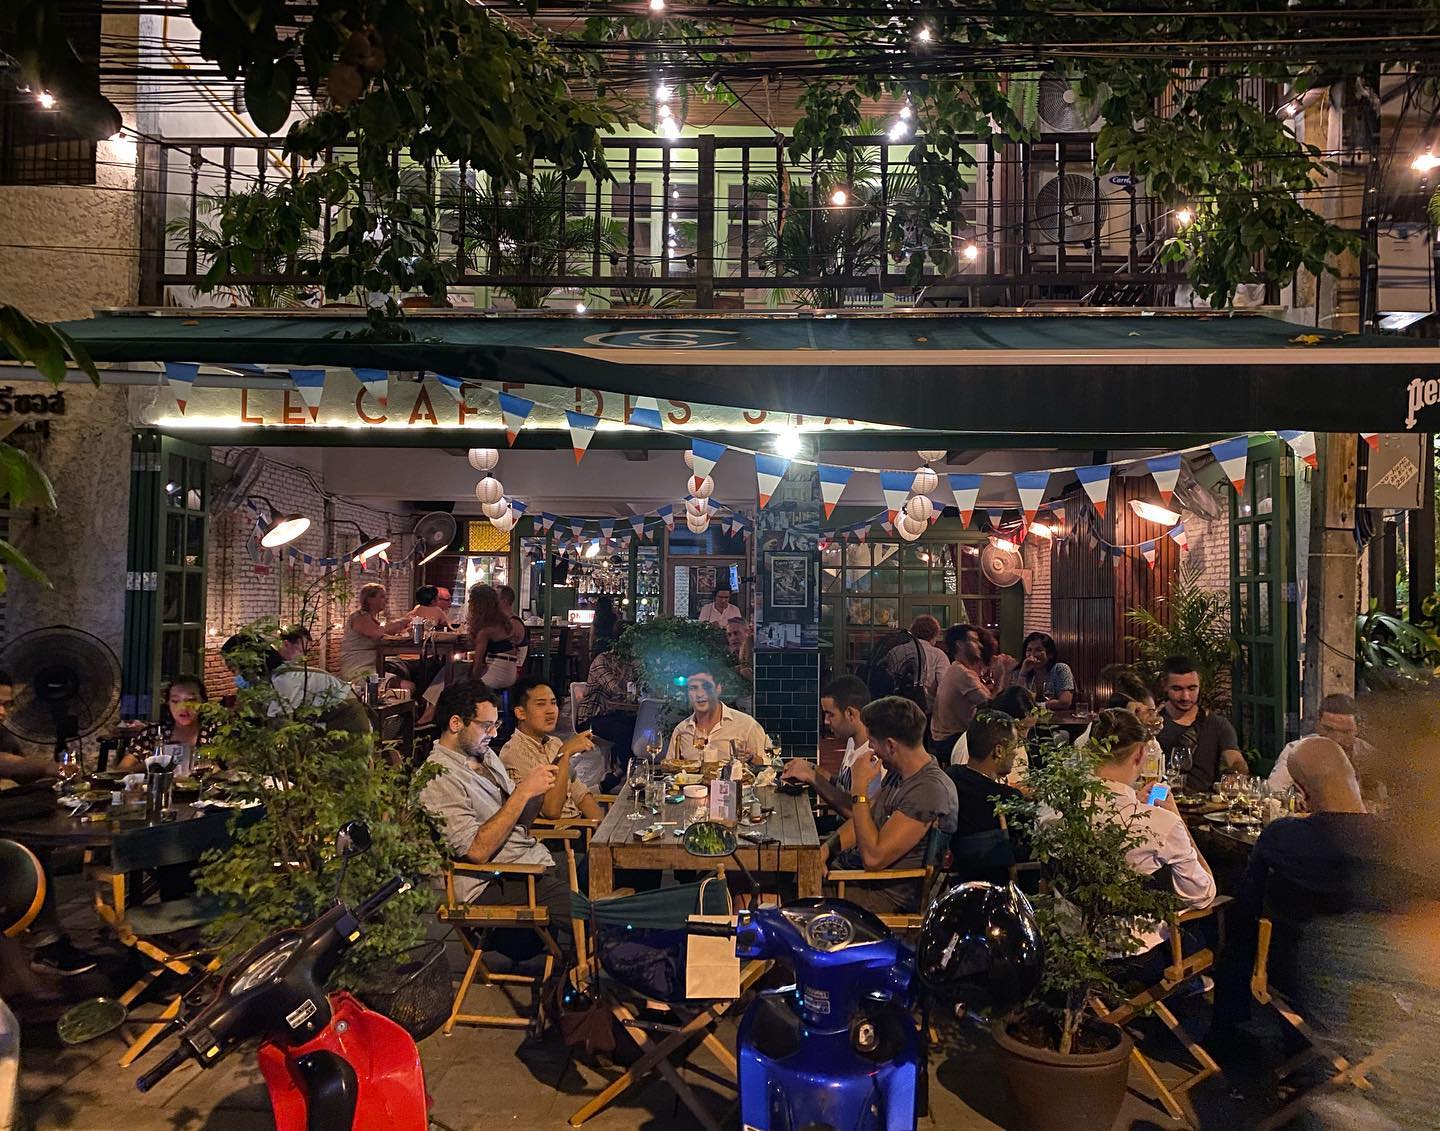 Le Café des Stagiaires - Bangkok (Le Café des Stagiaires - Bangkok) : กรุงเทพมหานคร (Bangkok)